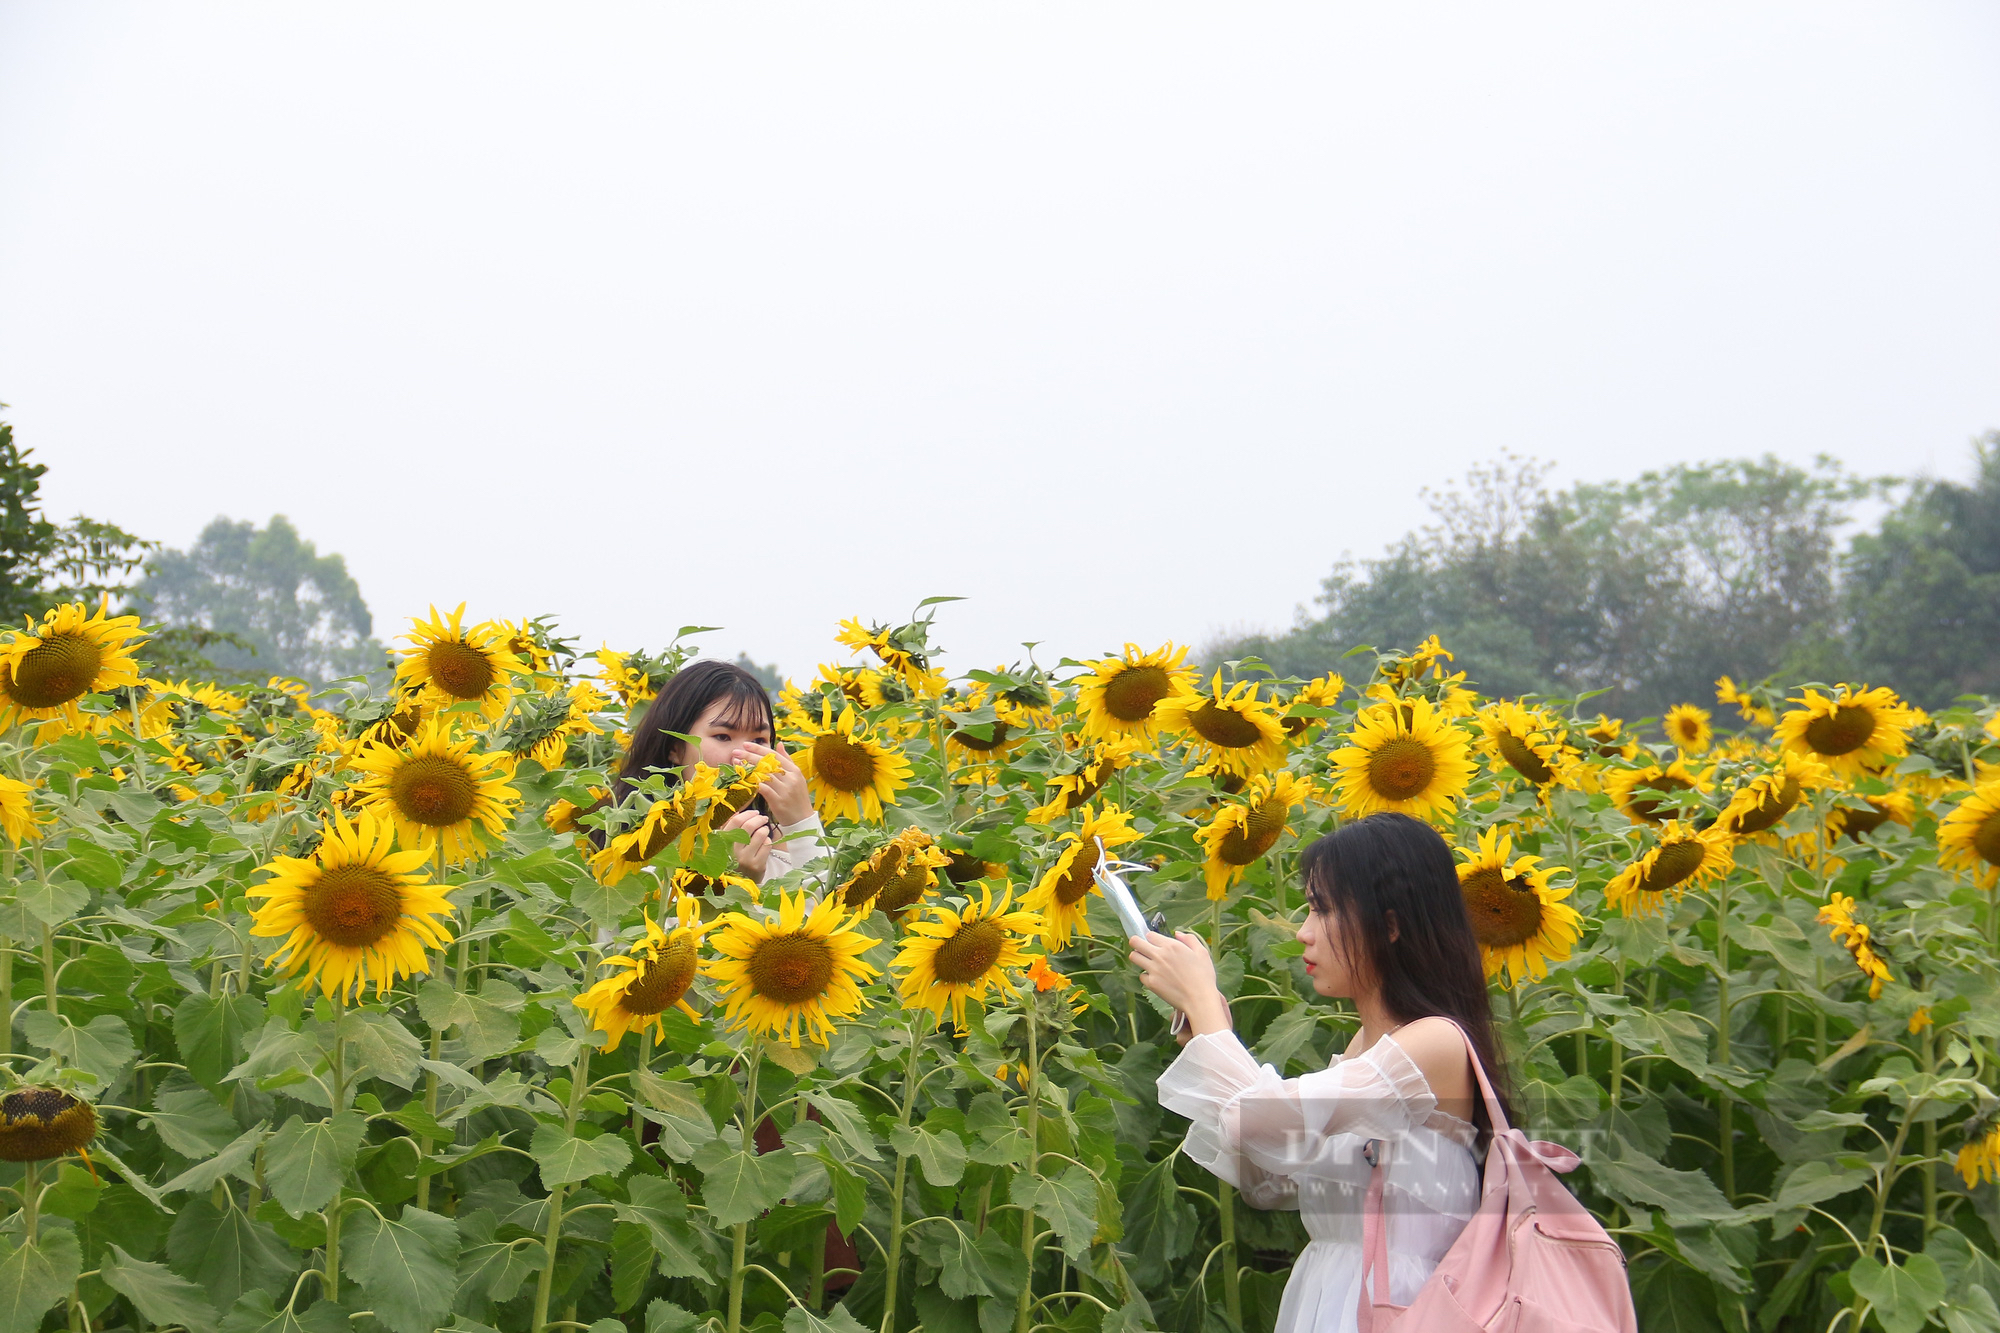 Mê mẩn trước cánh đồng hoa hướng dương nở rực sắc vàng "hút" giới trẻ ở Hà Nội - Ảnh 9.